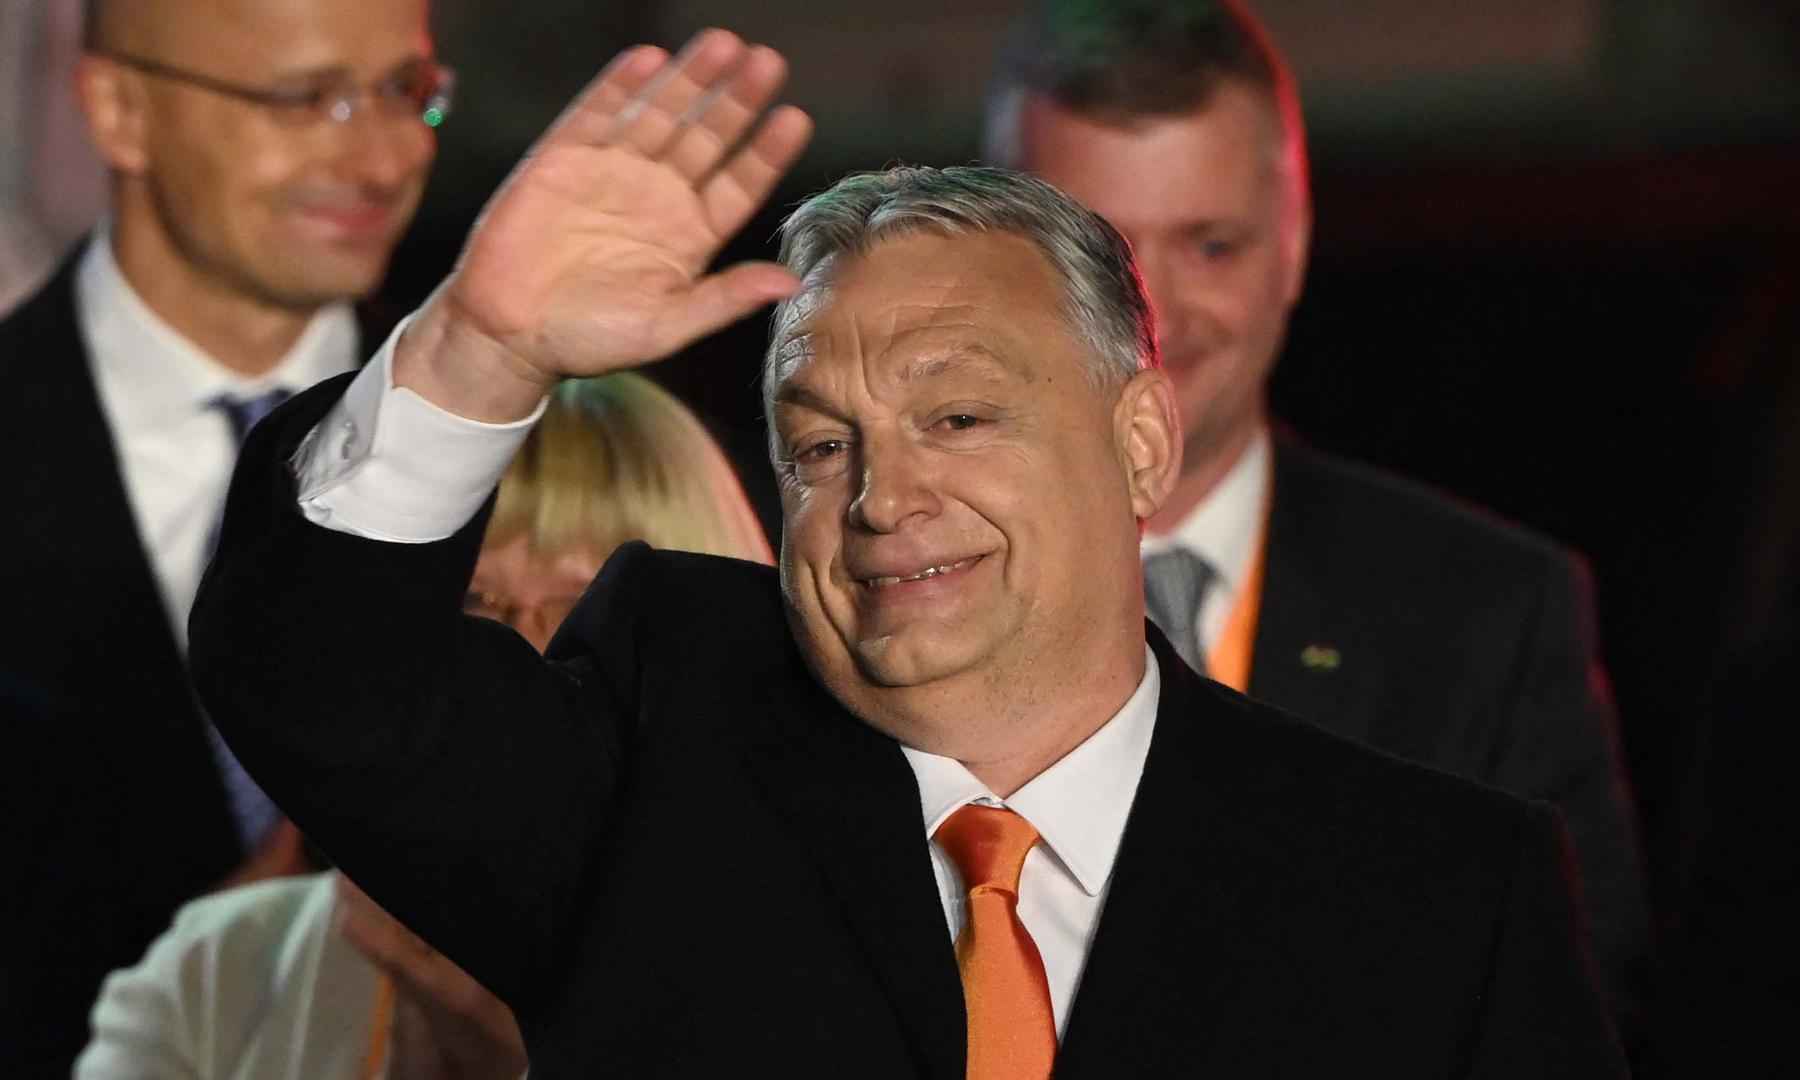 Viktor Orban garante quarto mandato após vencer eleições na Hungria - Attila KISBENEDEK / AFP

